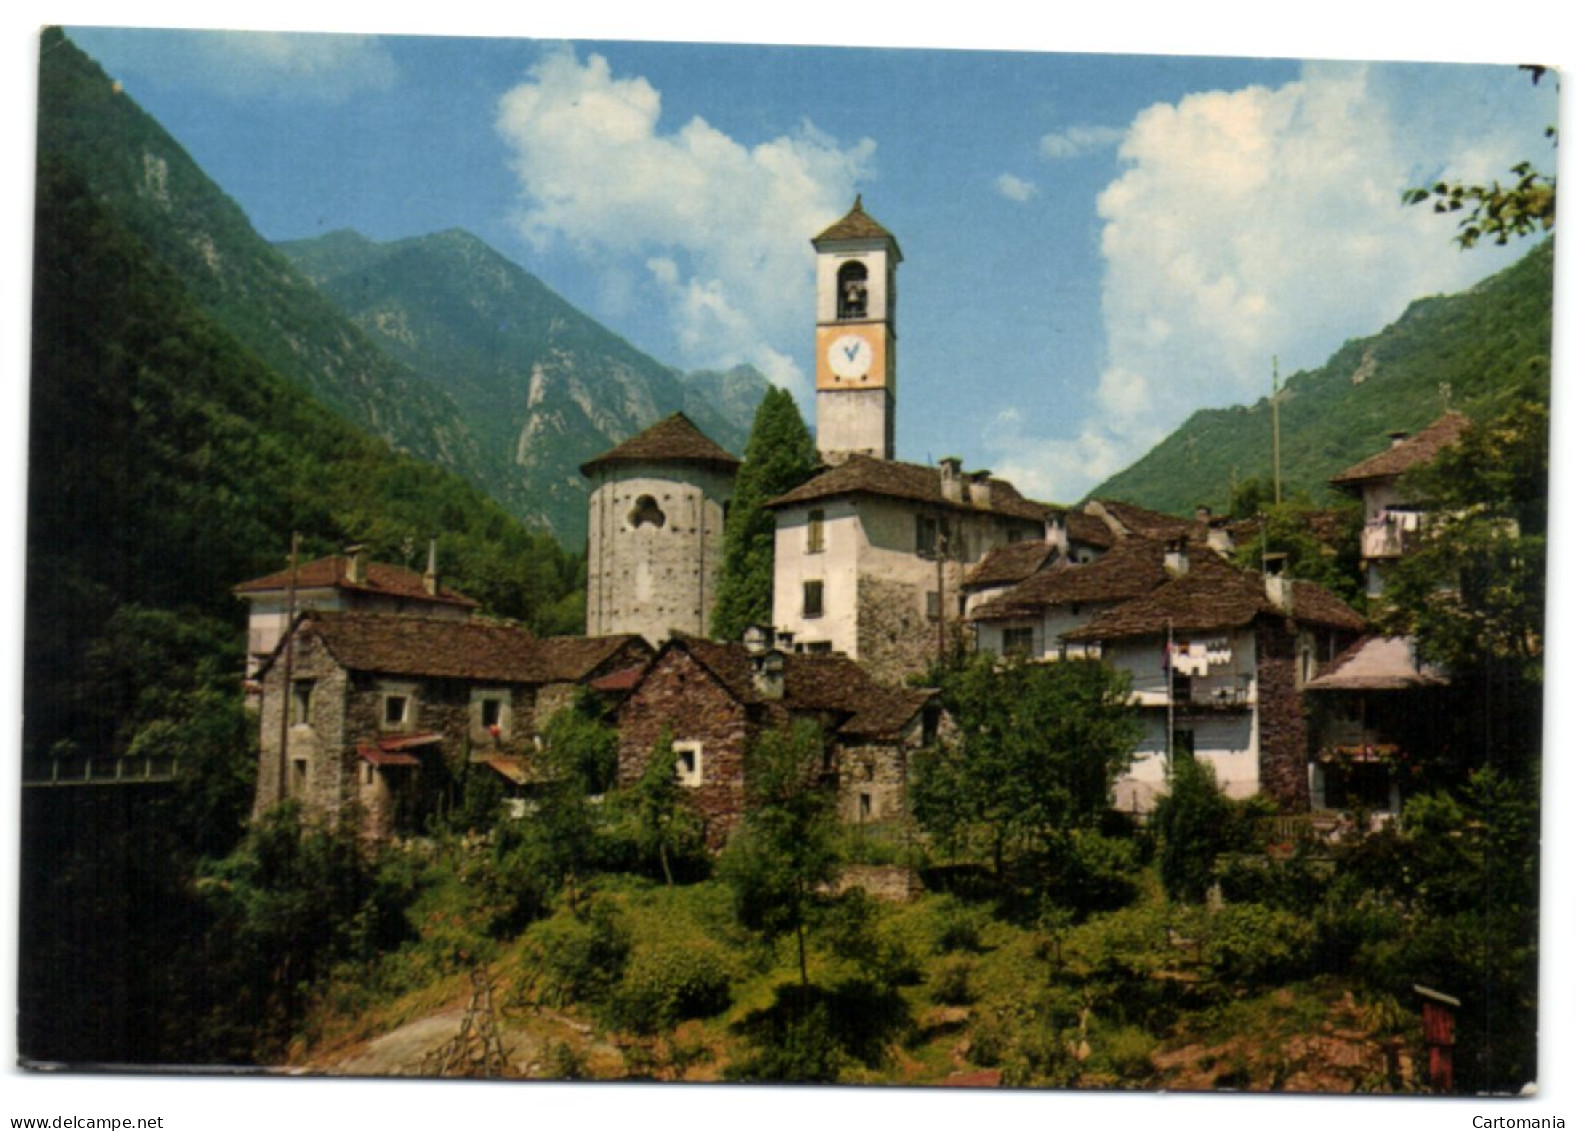 Lavertezzo (Valle Verzasca) - Verzasca